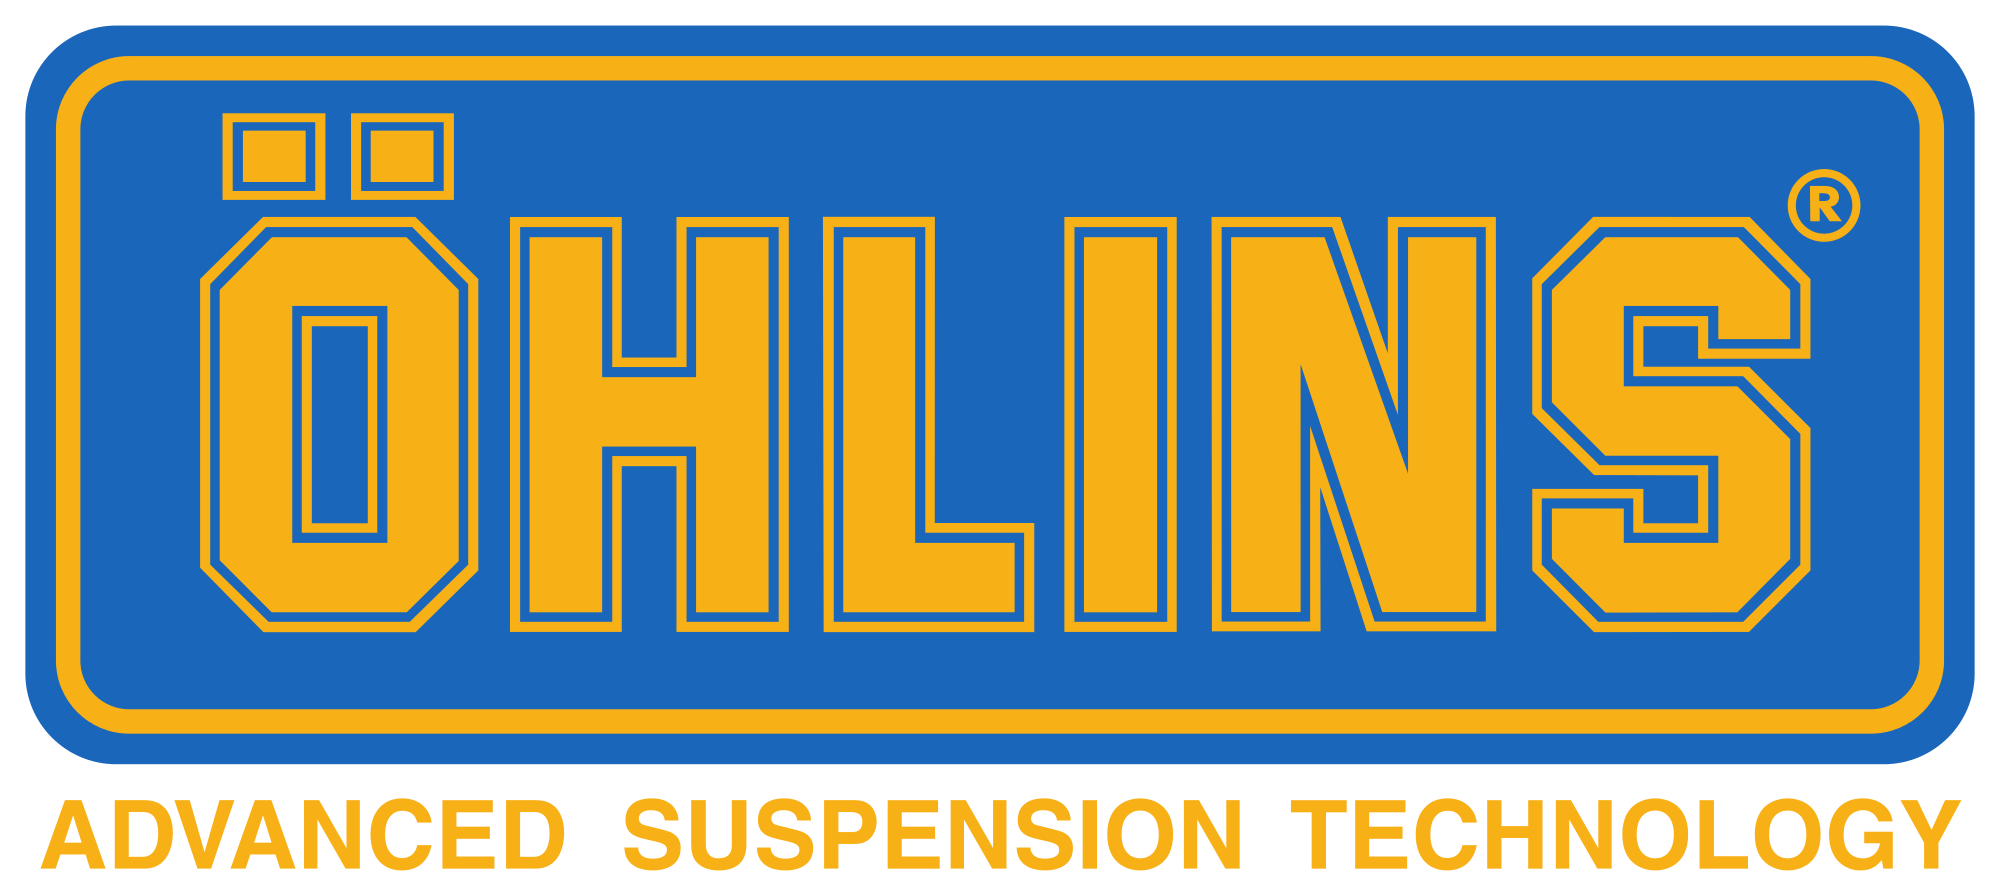 Ohlins_logo 2.png